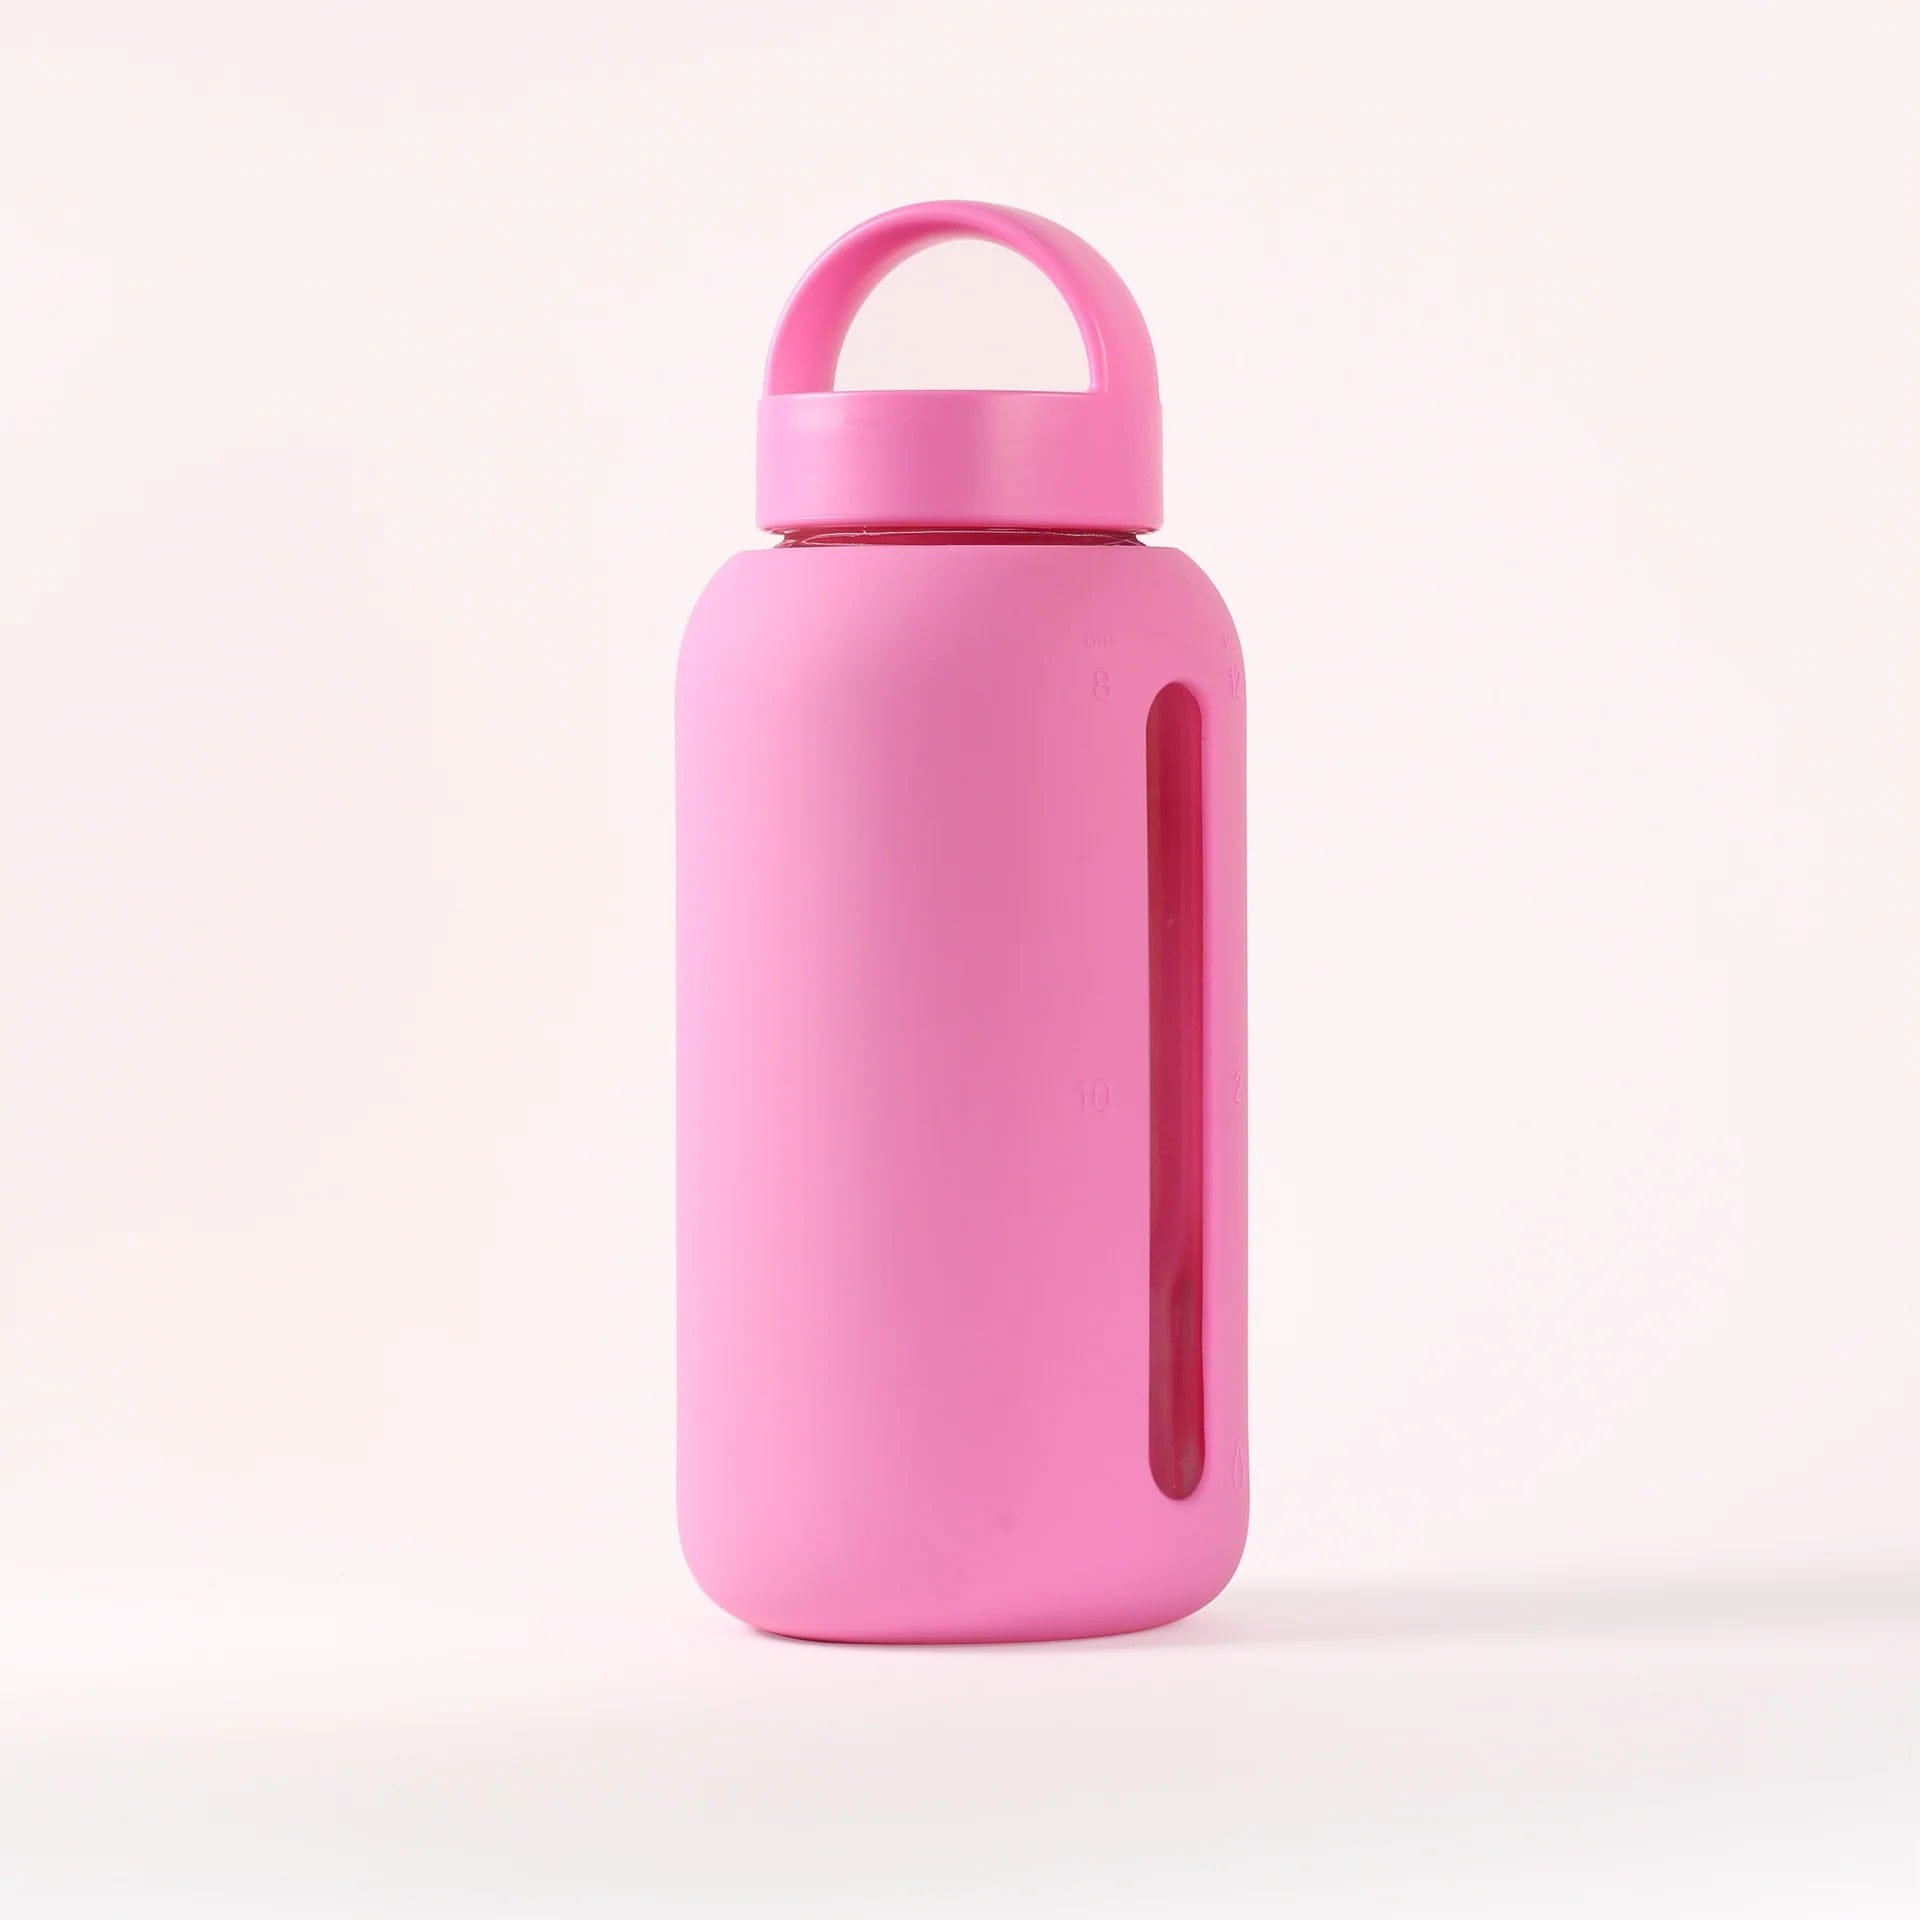 Hot water bottle in pregnancy: Is it safe?